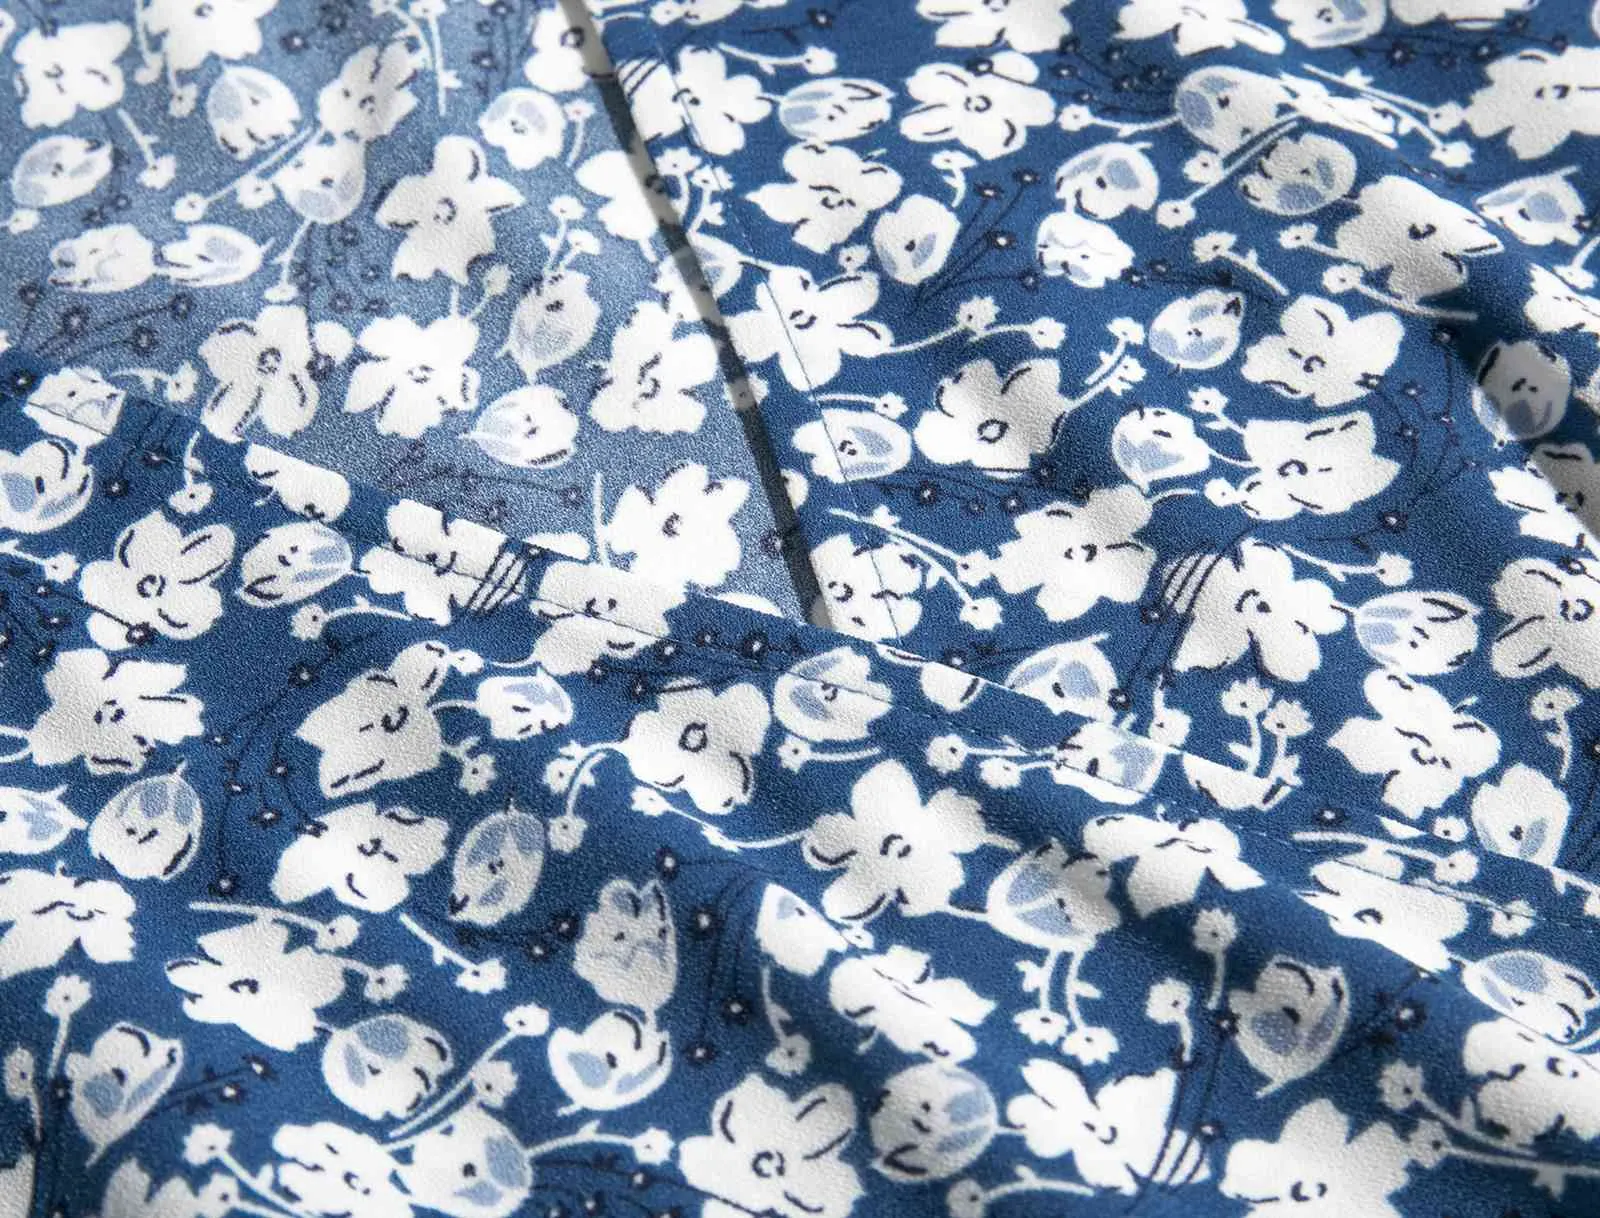 Vintage Francja Styl Krótki Rękaw Wrap Koszula Moda Blue Floral Print Tie Łuk Talii Bluzka Kobiety Jednoczęściowe Topy 210429